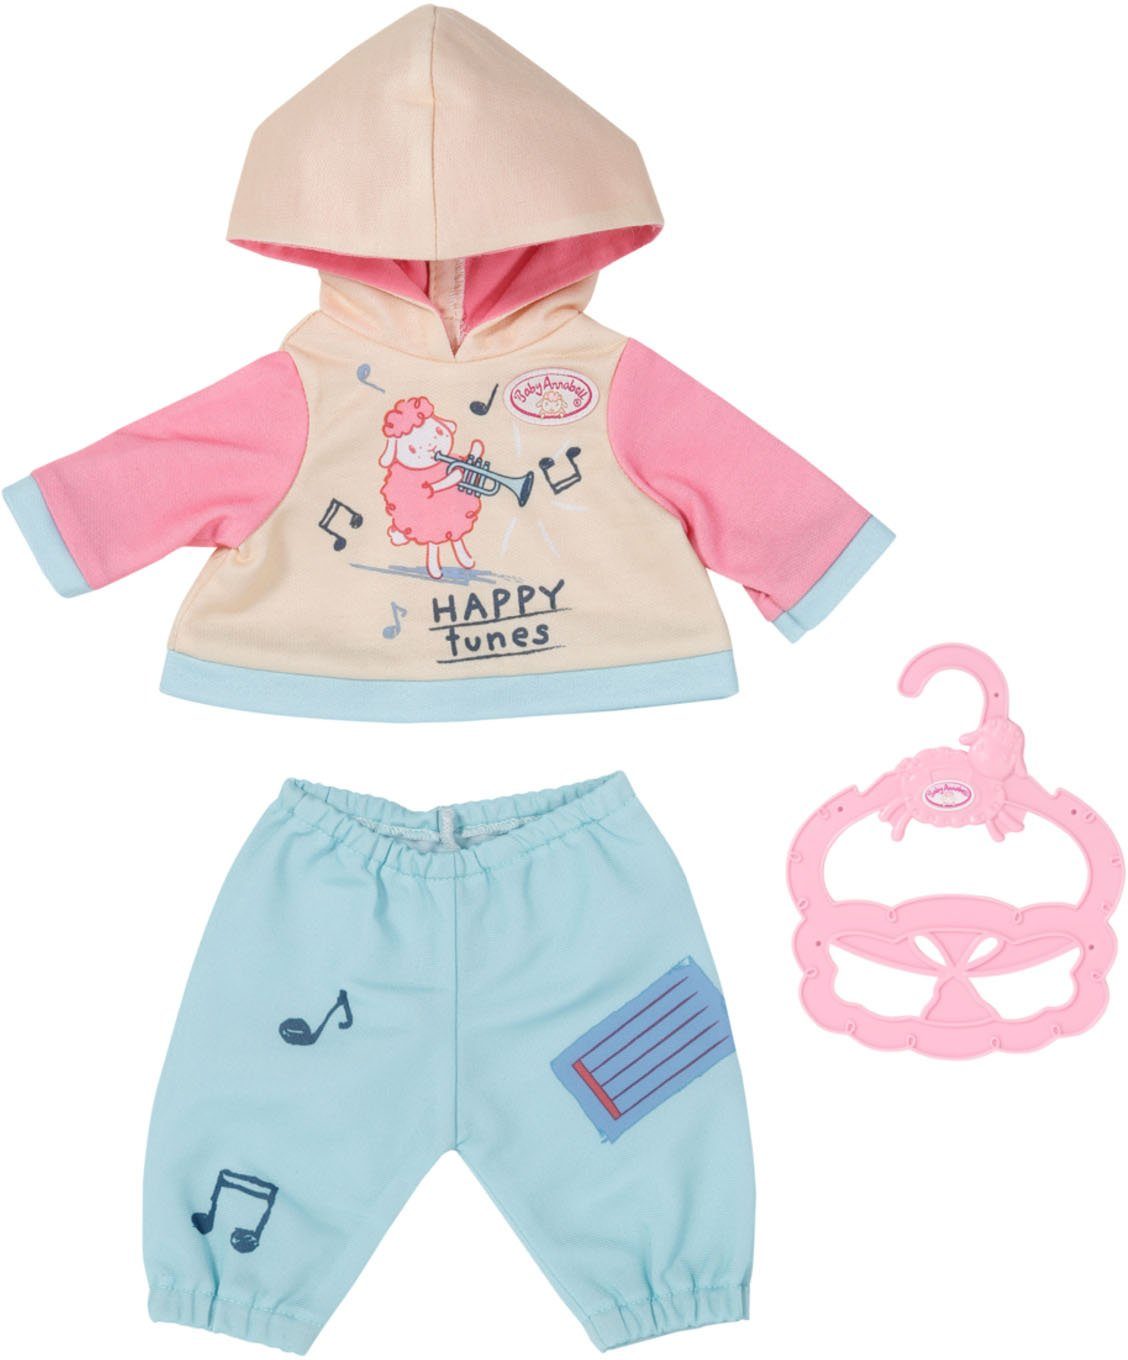 Baby Annabell Puppenkleidung Little Jogginganzug, 36 cm, mit Kleiderbügel | Puppenkleidung